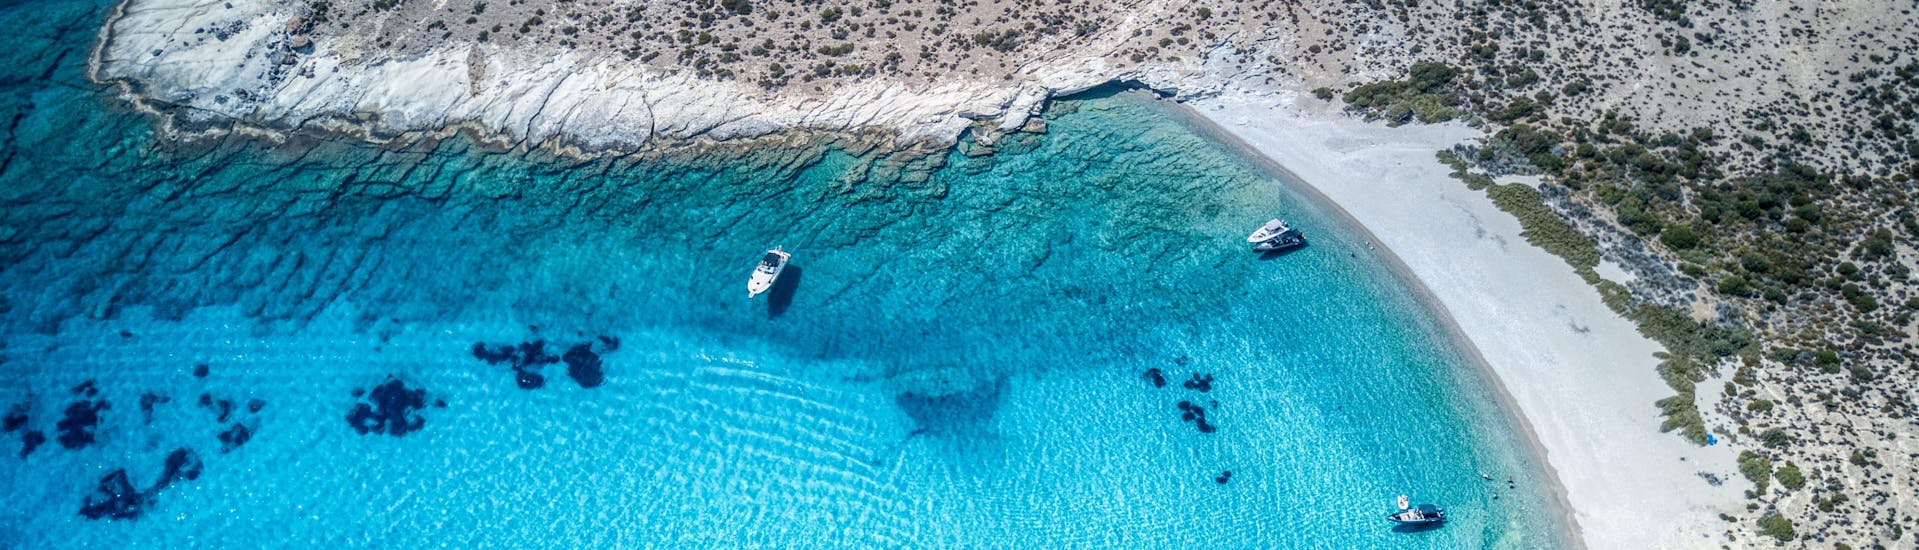 Blick auf die Insel Polyaigos, ein Ziel, das Sie während einer Bootstour in Griechenland besuchen können.